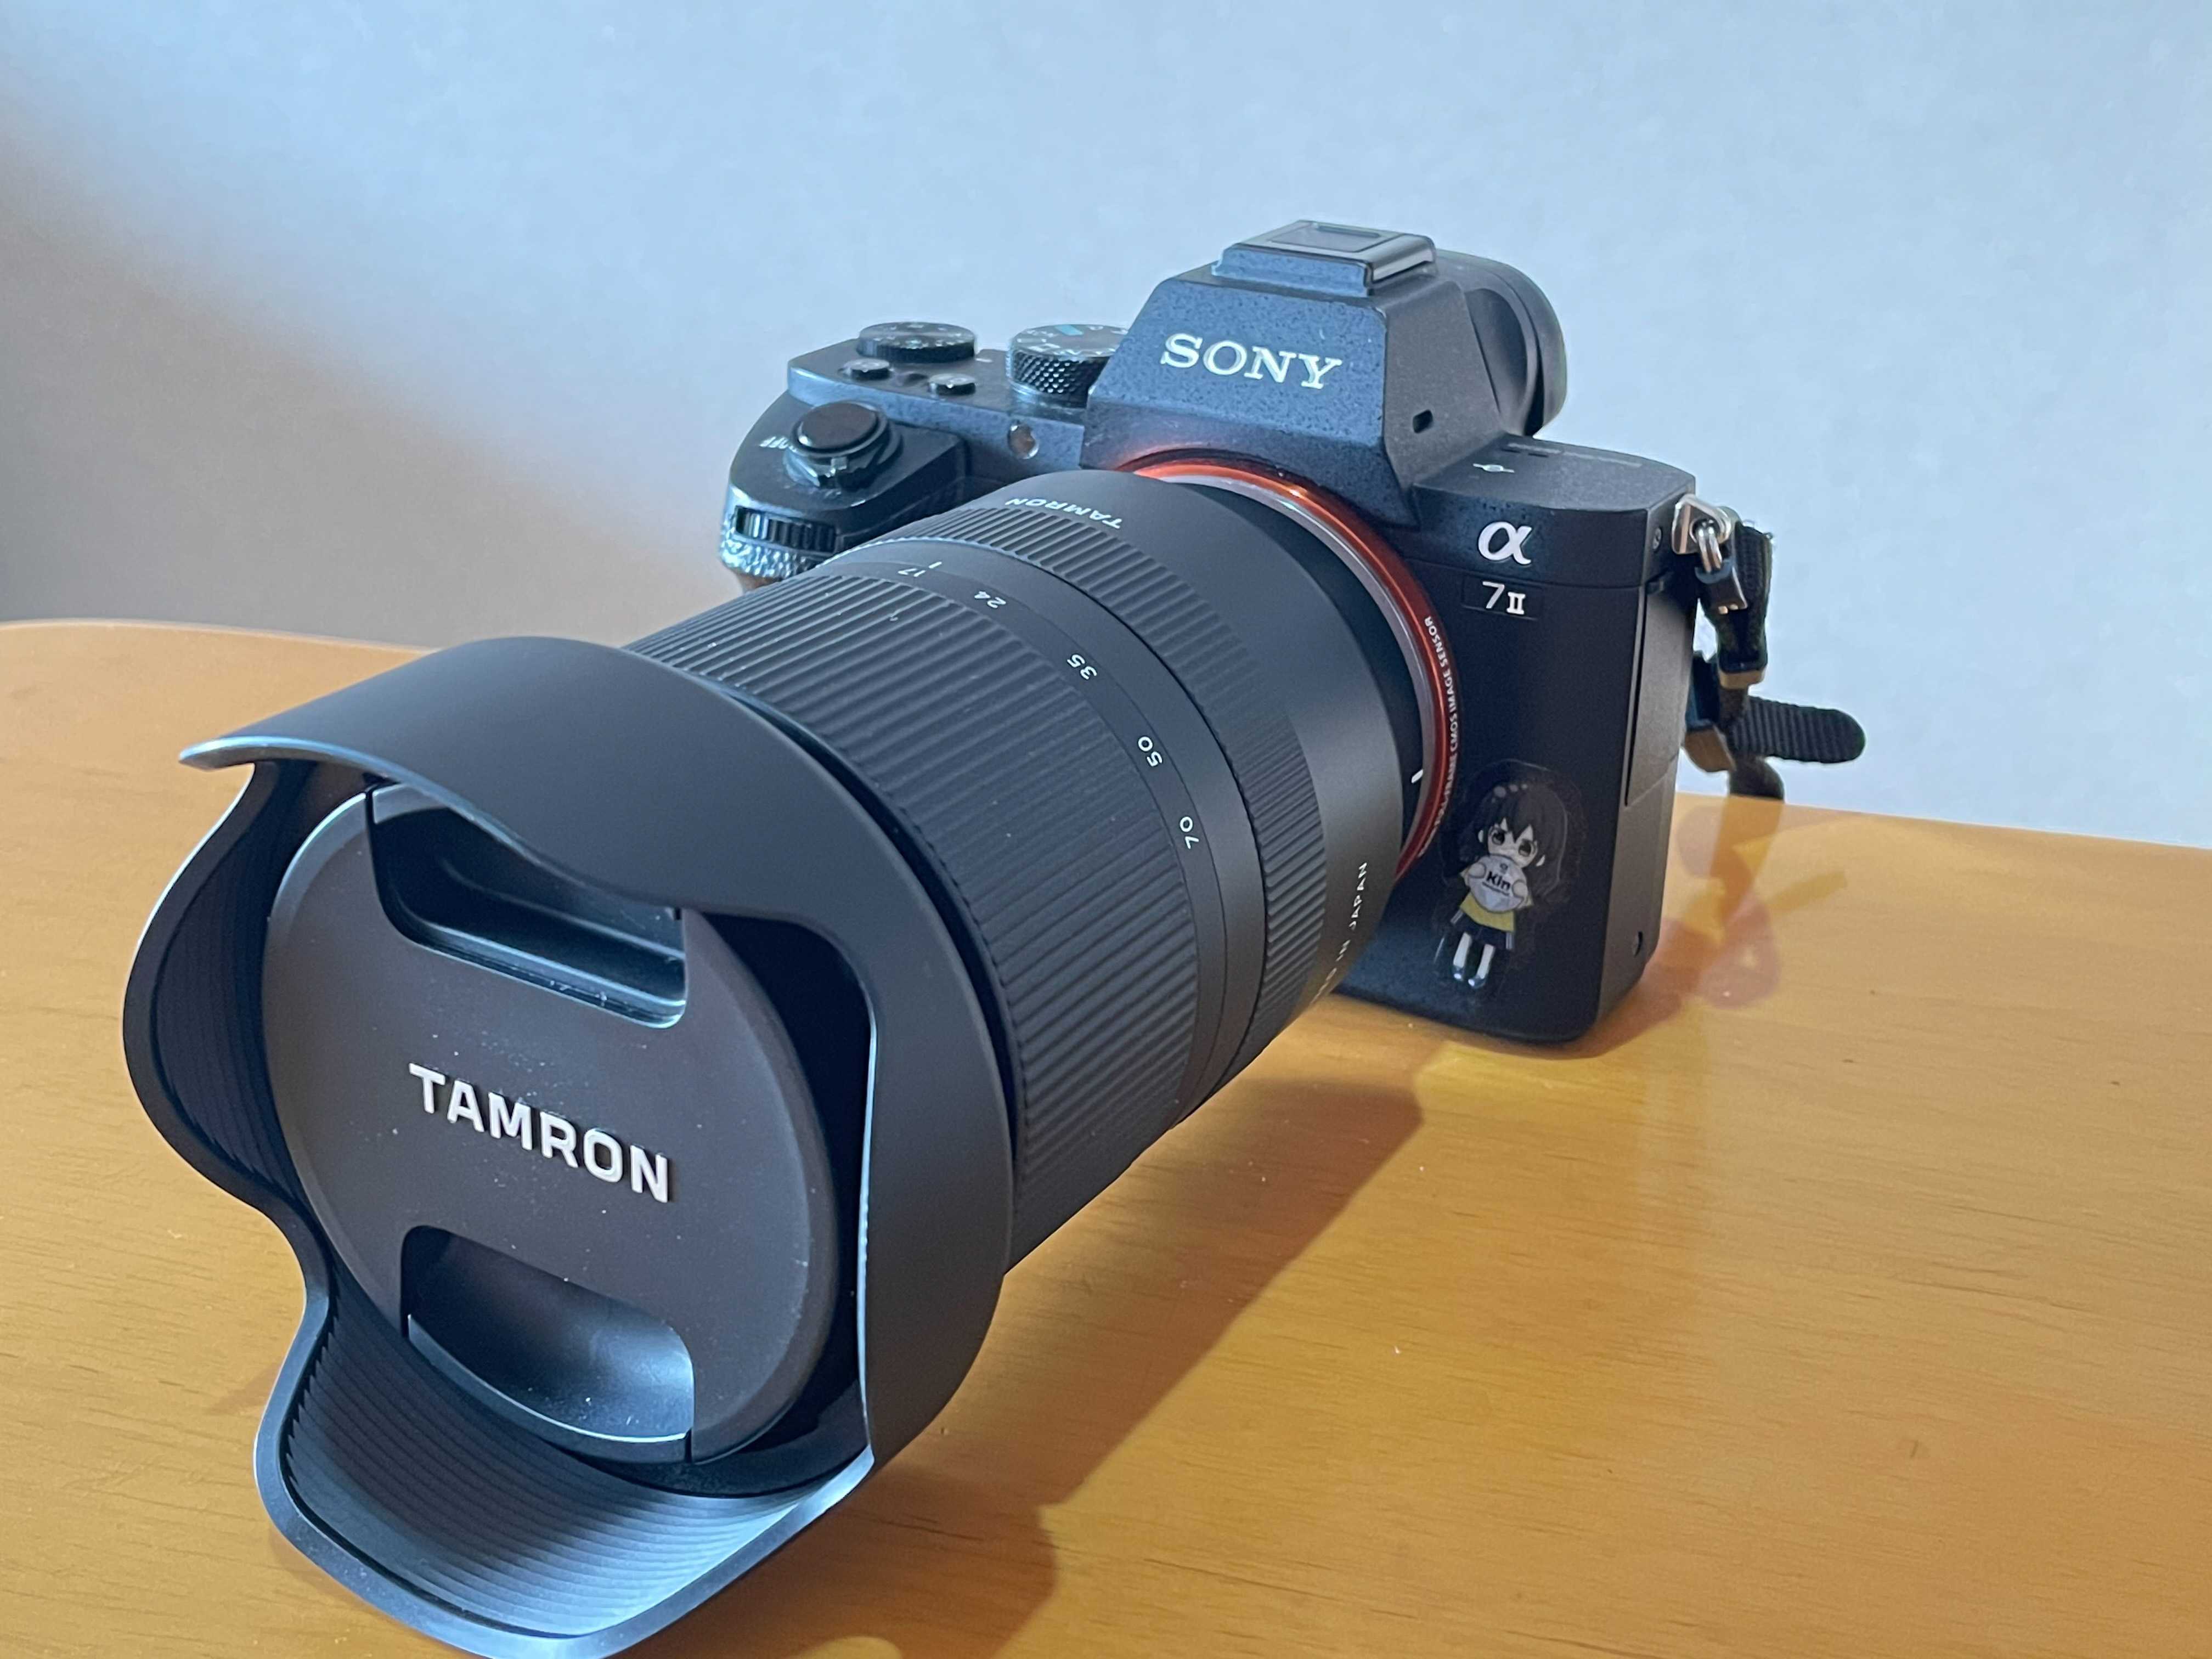 新品》 TAMRON (タムロン) 17-70mm F2.8 Di III-A VC RXD B070S